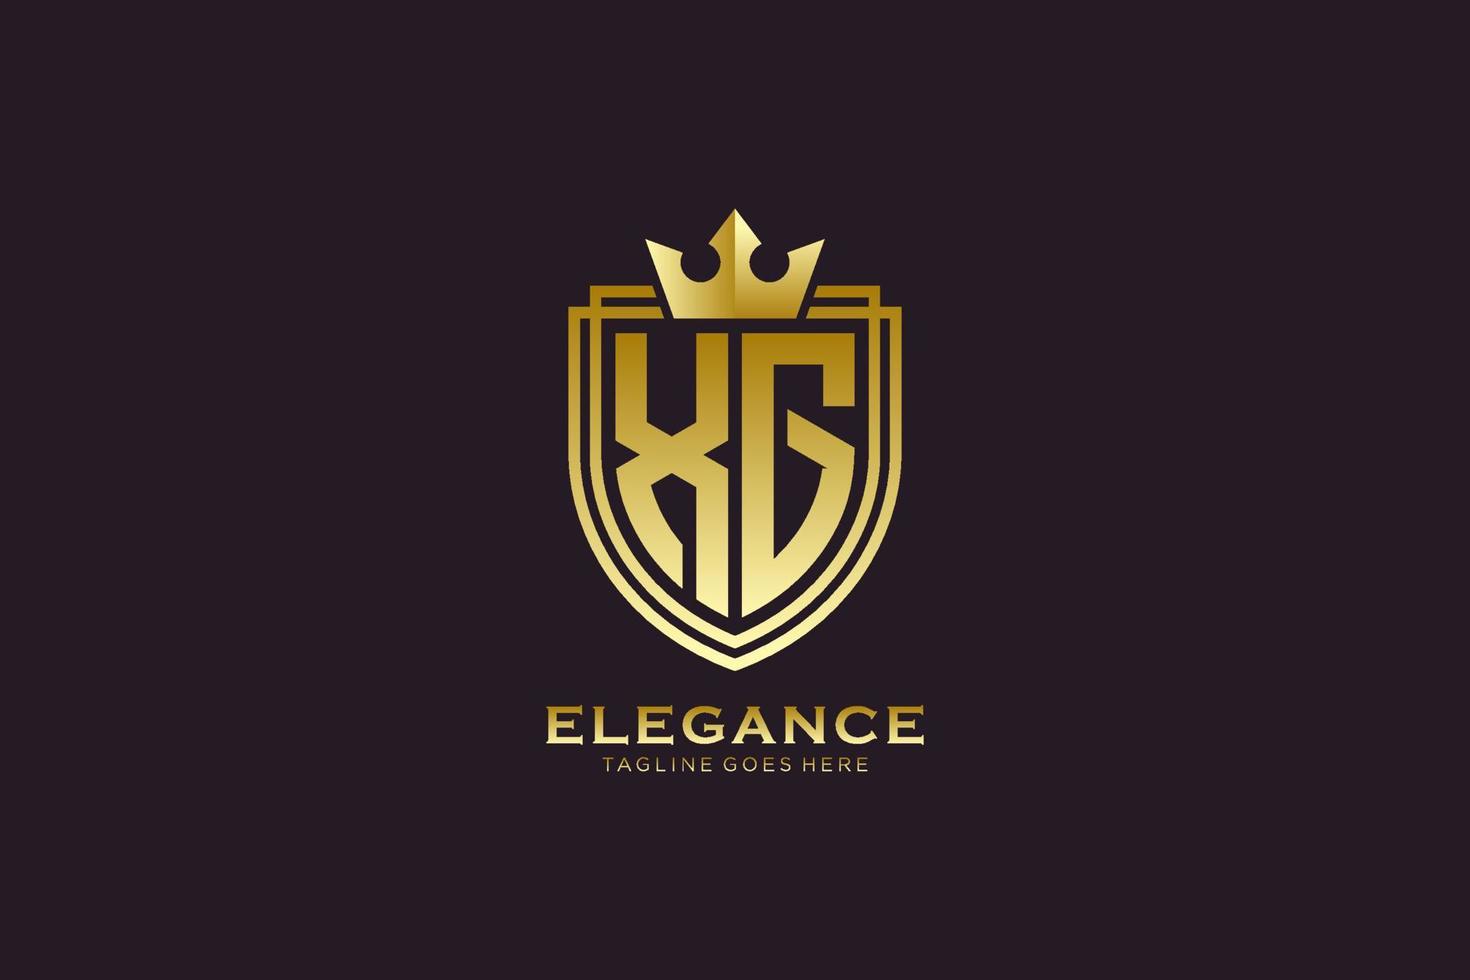 första xg elegant lyx monogram logotyp eller bricka mall med rullar och kunglig krona - perfekt för lyxig branding projekt vektor